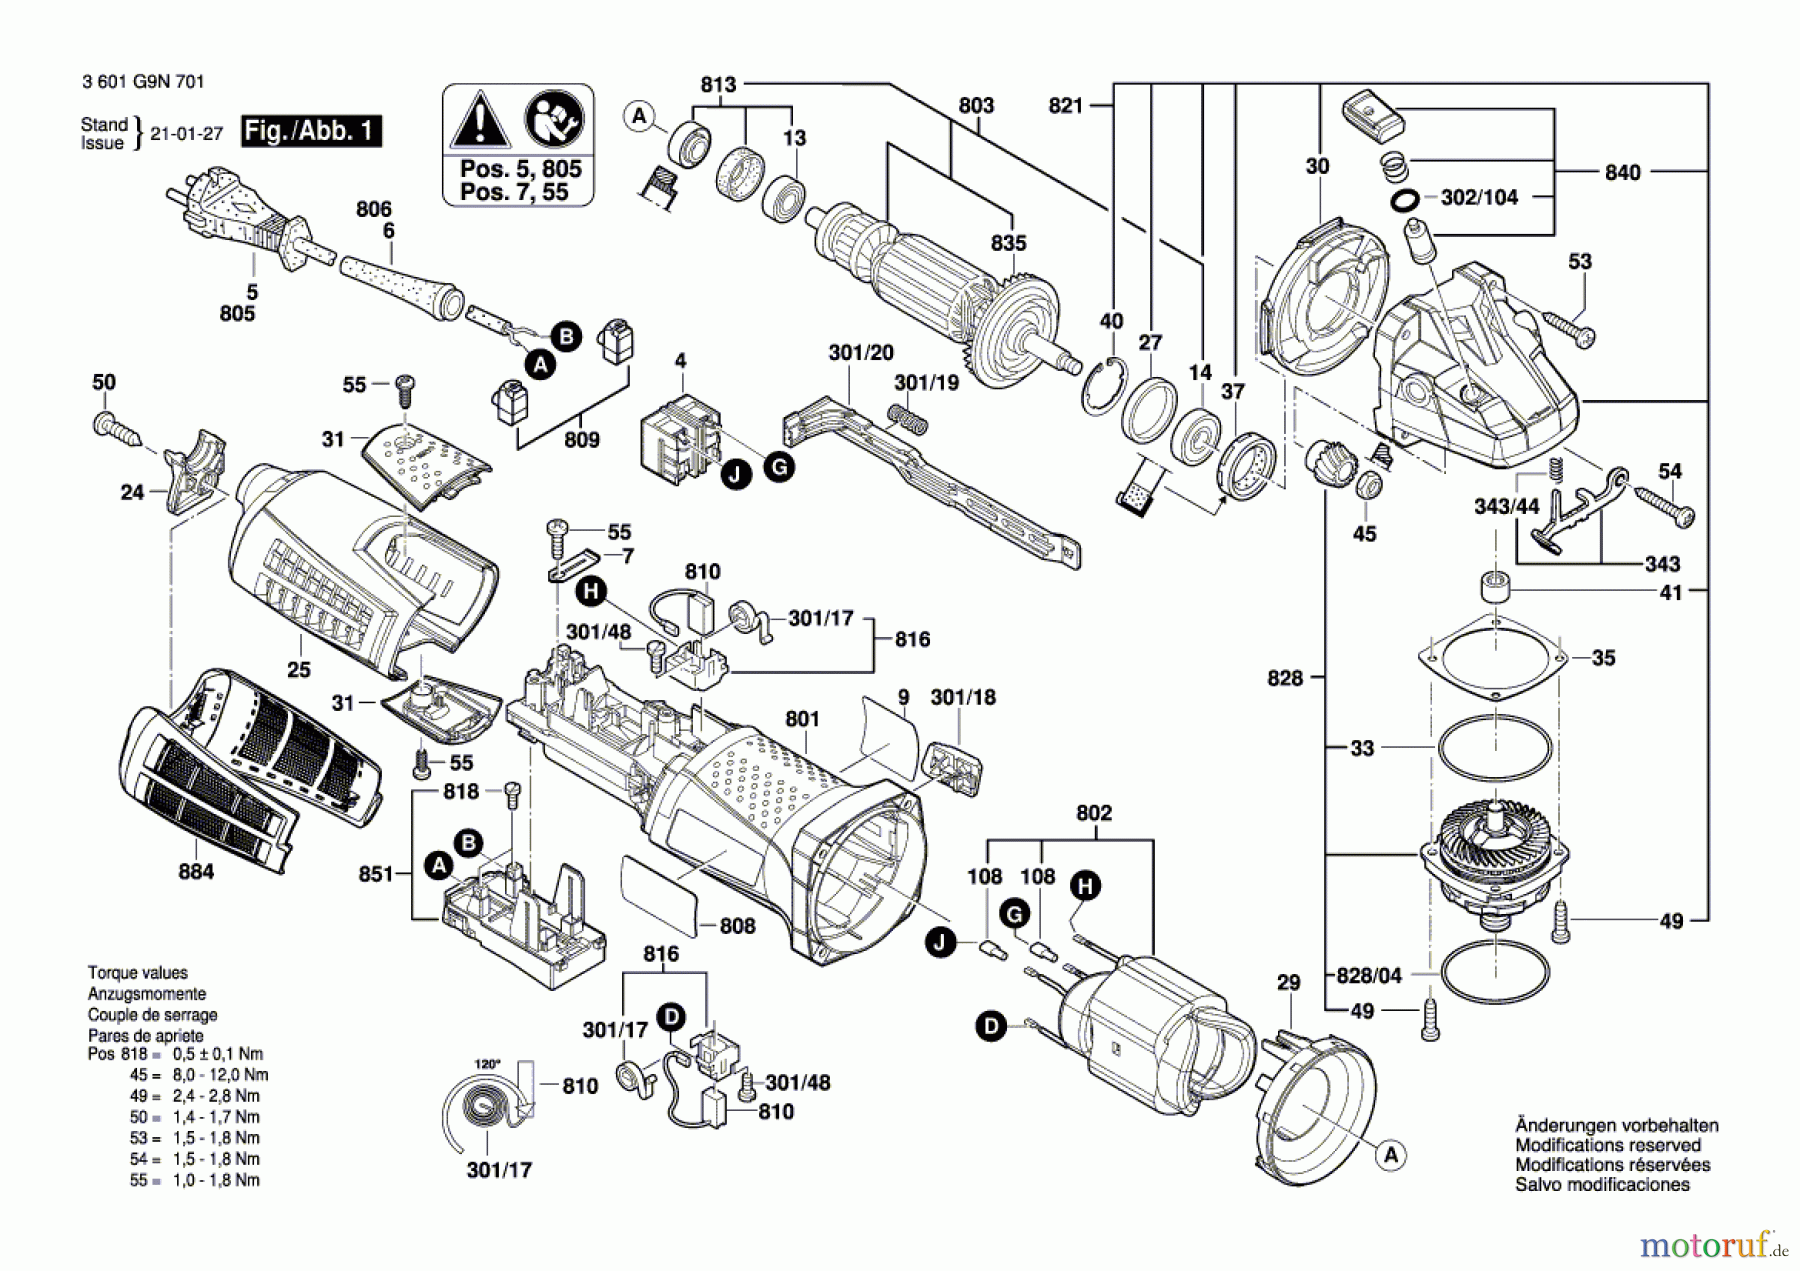  Bosch Werkzeug Winkelschleifer GWS19 CI 125mm (3M) Seite 1